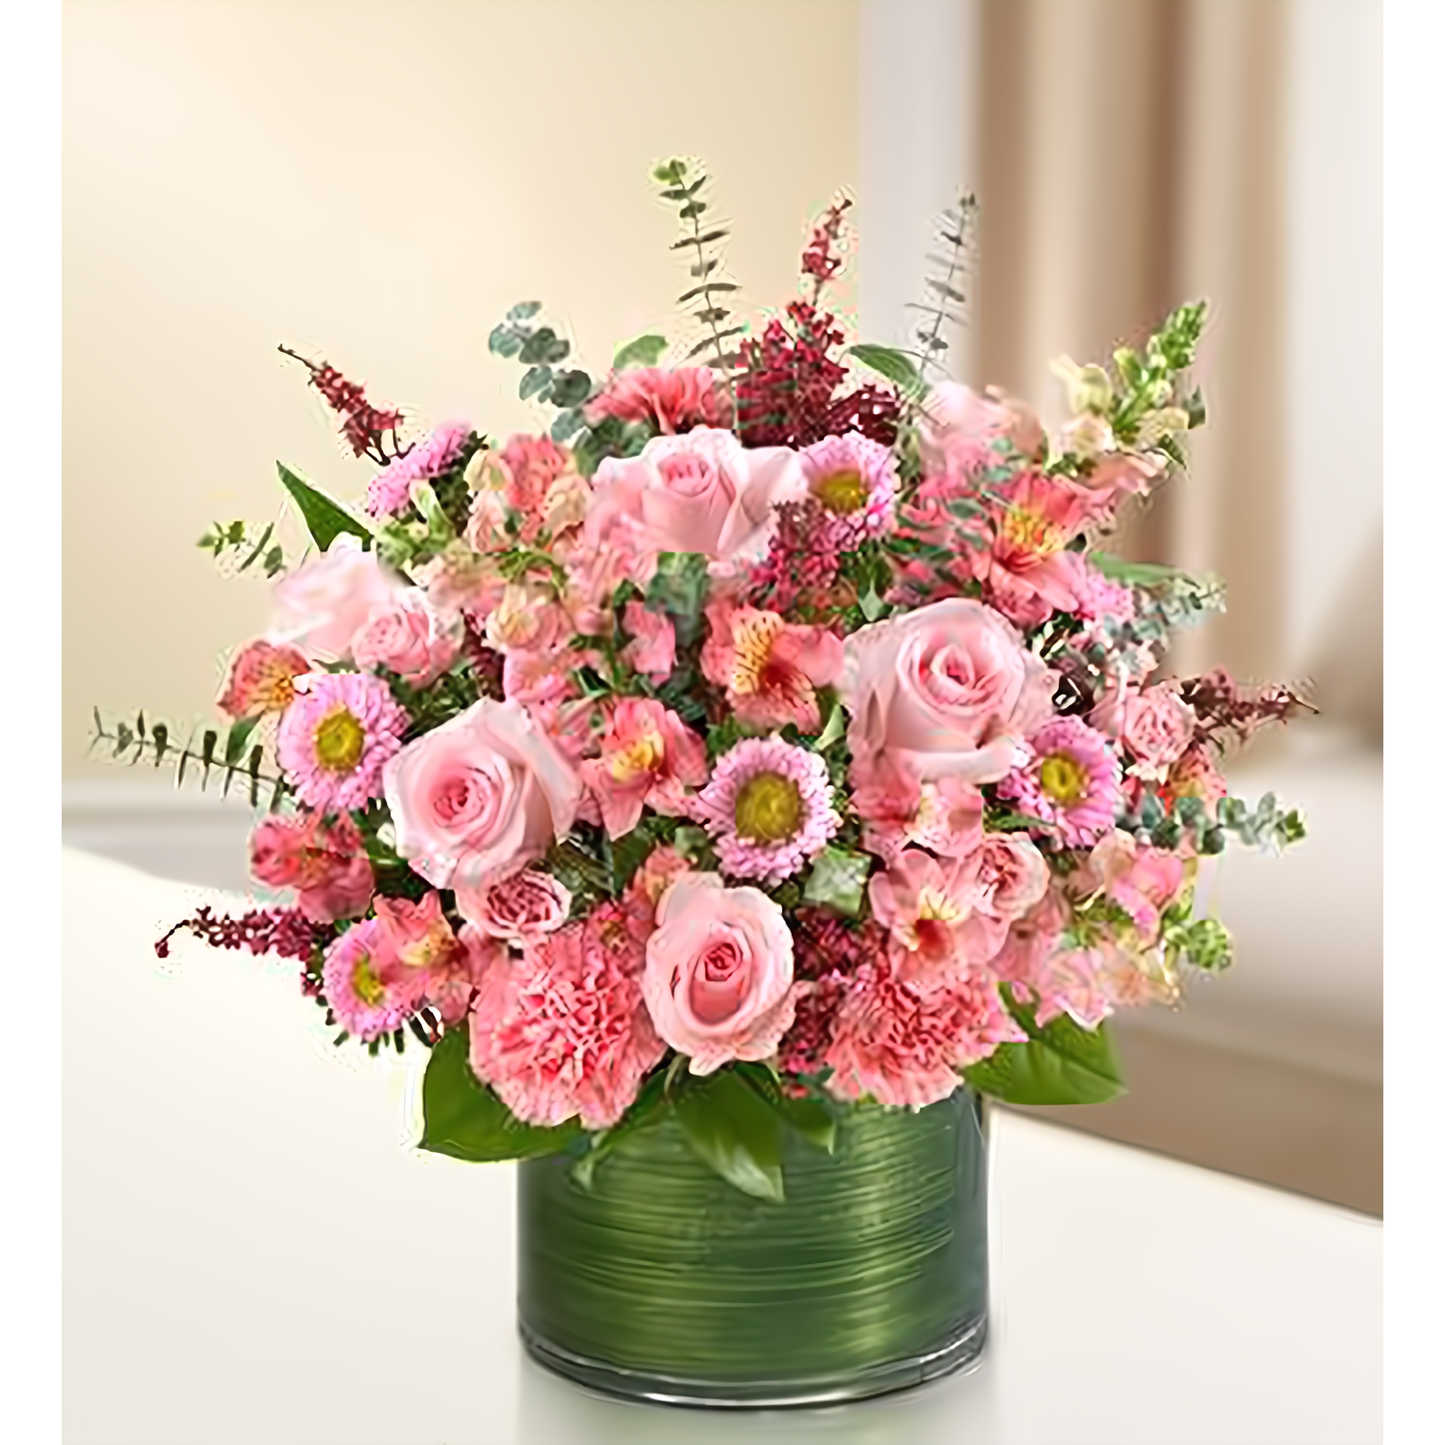 Cherished Memories - All Pink - Funeral > Vase Arrangements